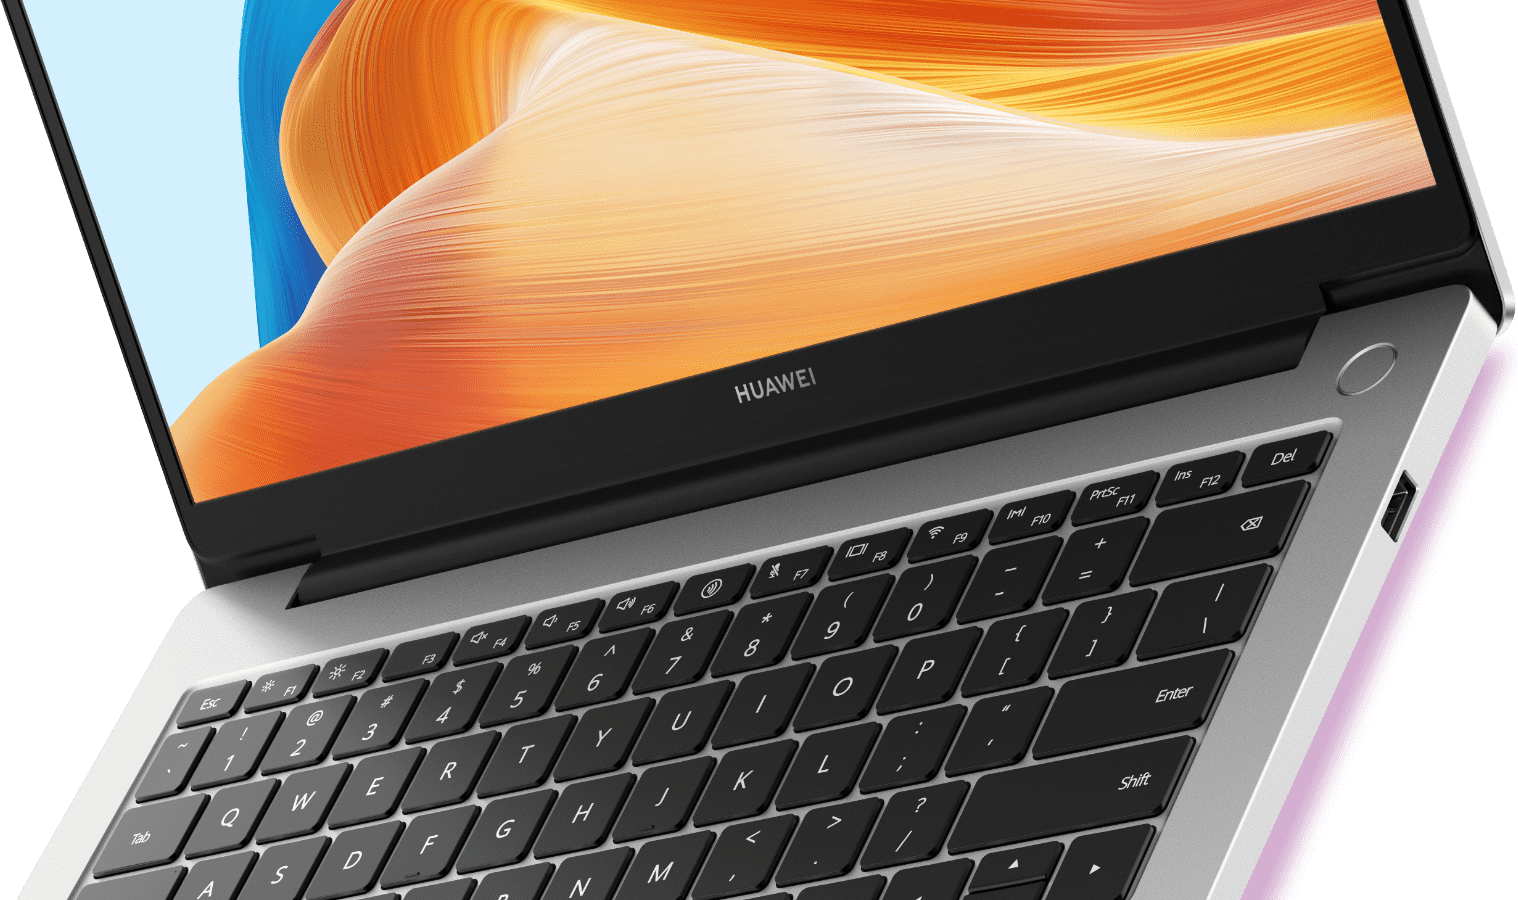 Huawei MateBook D14 : l'excellent PC portable voit son prix chuter de 26%